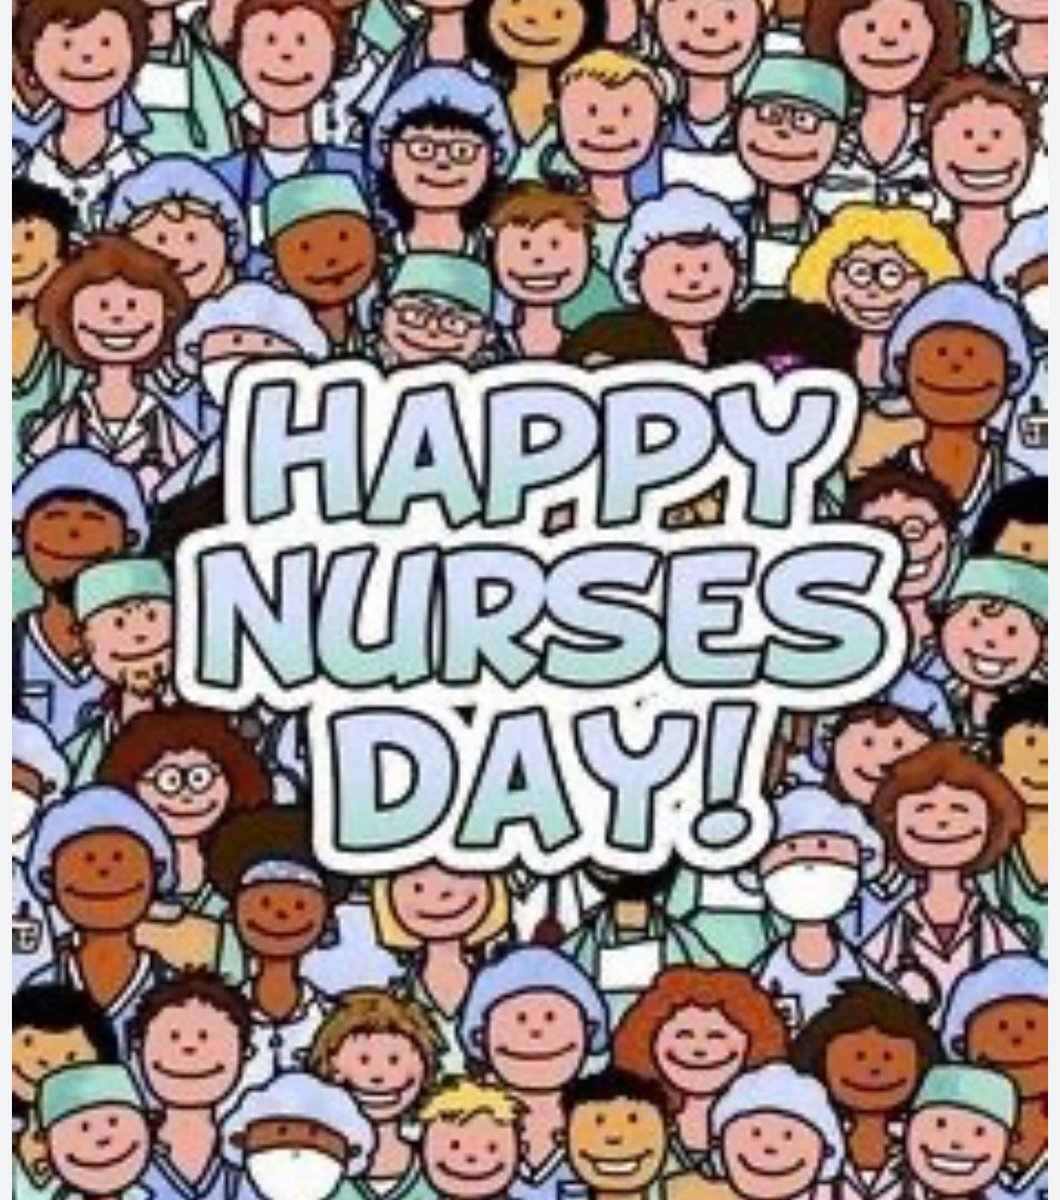 Por eso, cada 12 de mayo se conmemora el Día Internacional de la Enfermería y desde el Centro de Salud de Los Dolores lo celebramos con orgullo.

#DiaInternacionaldelaEnfermeria #comunitaria #enfermeriacomunitaria #enfermeria #atencionprimaria